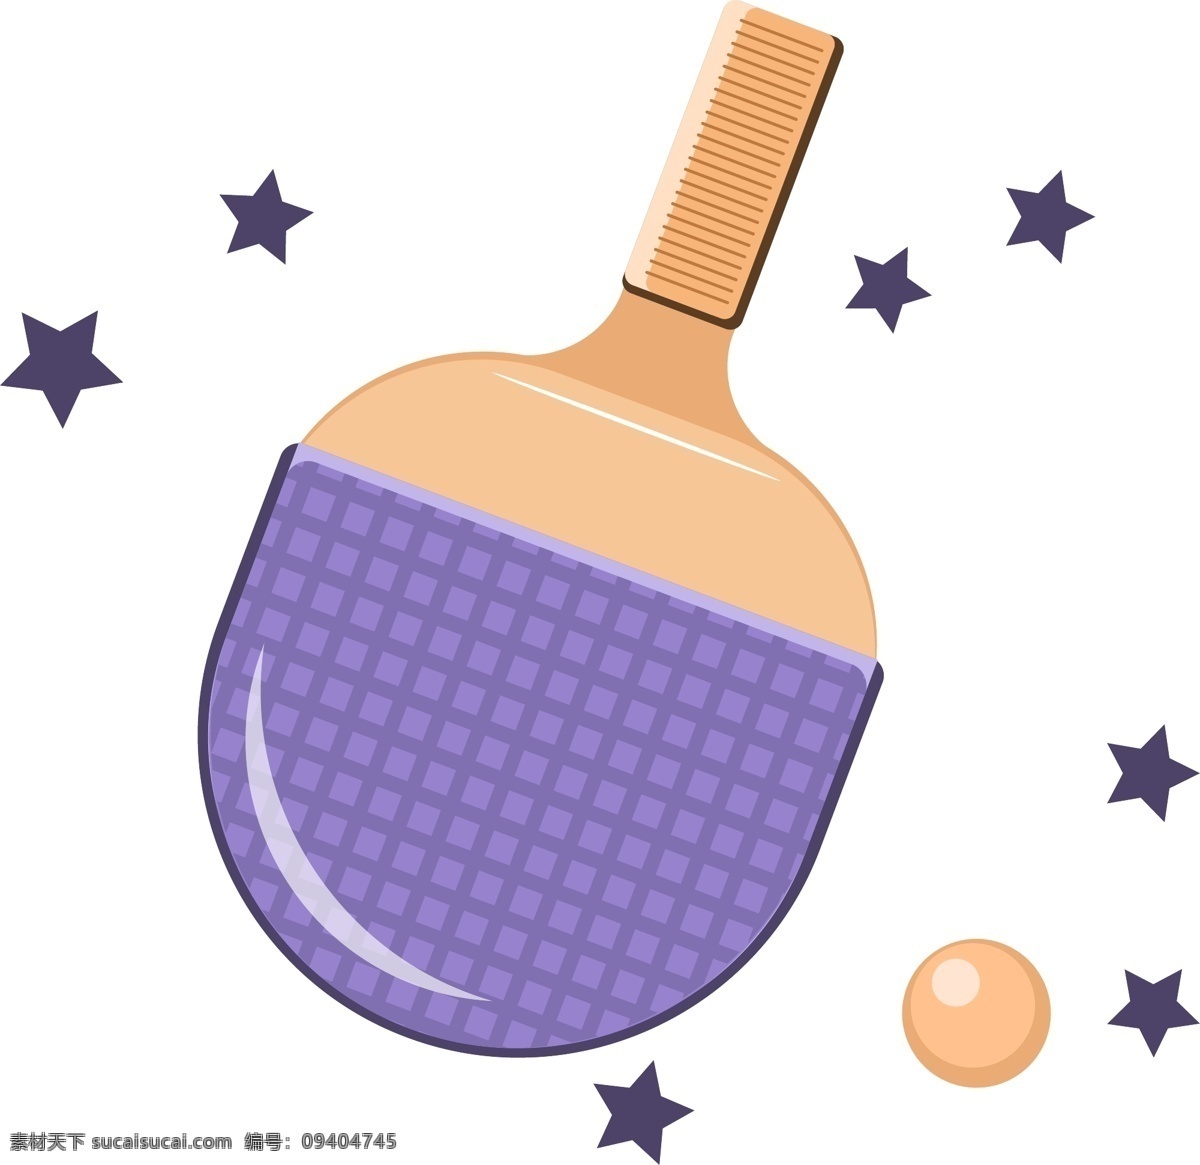 生活用品 运动器材 乒乓球 设计元素 紫色 可爱